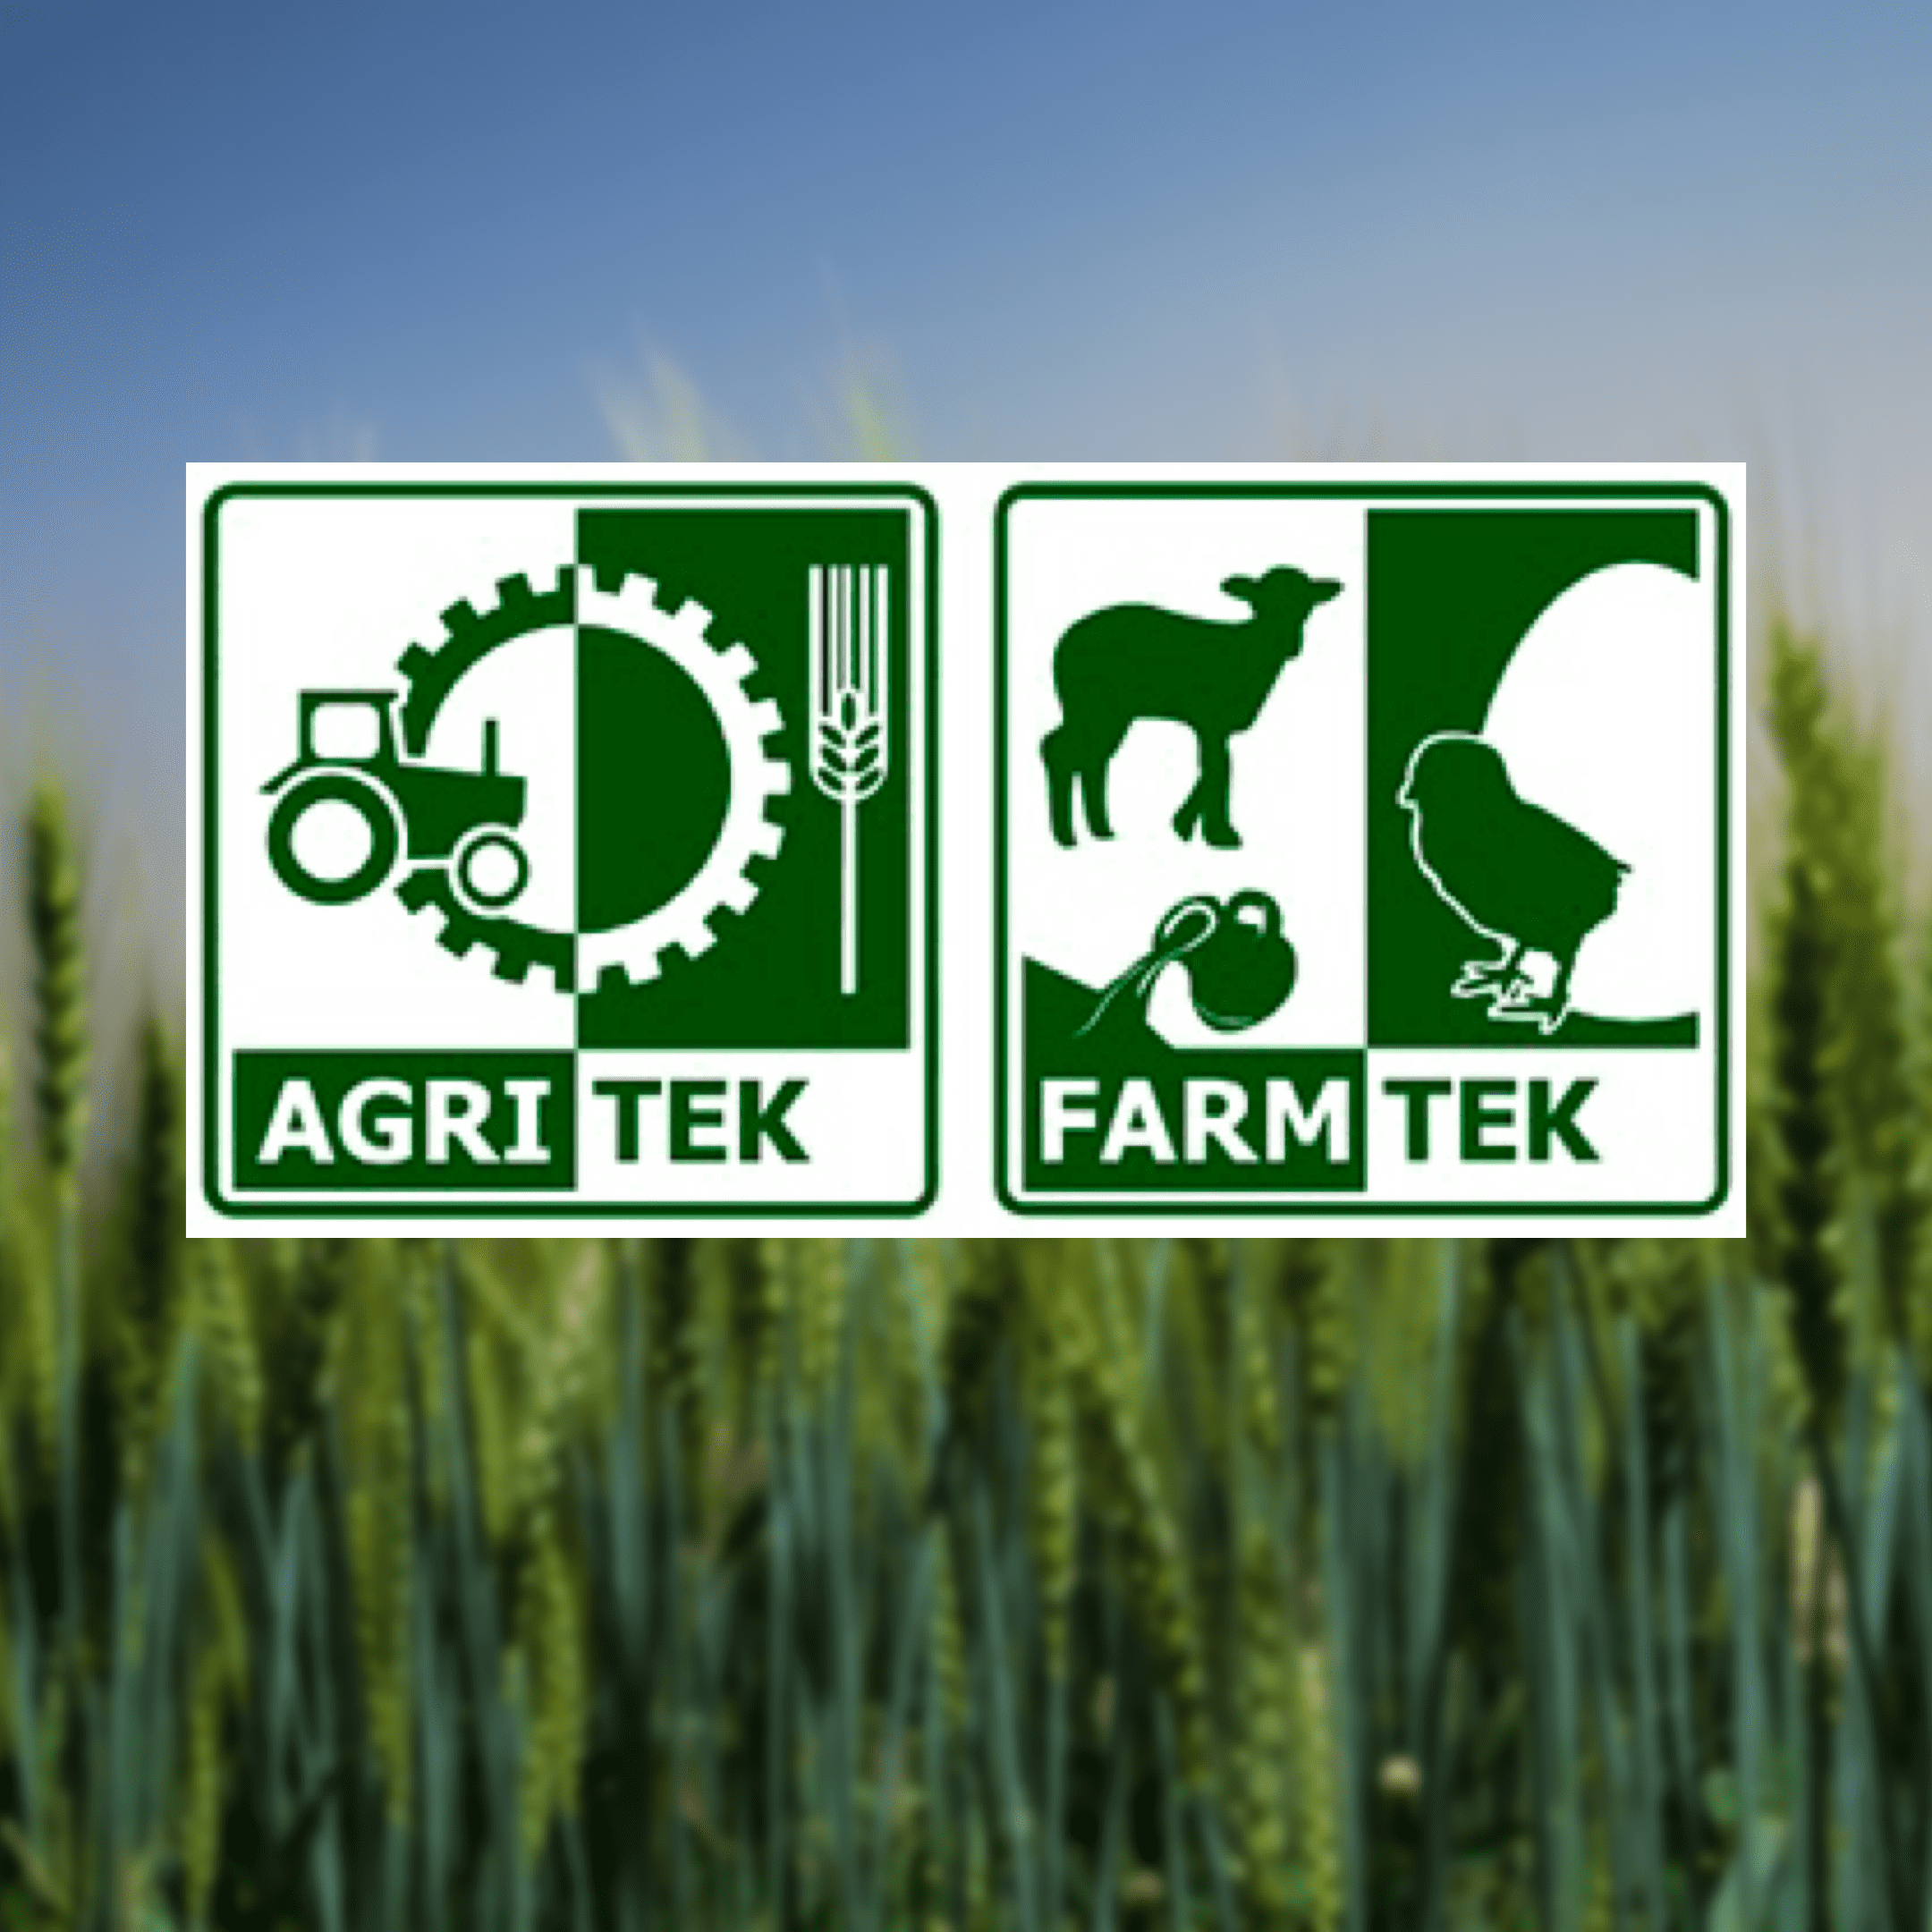  AgriTek/FarmTek Astana